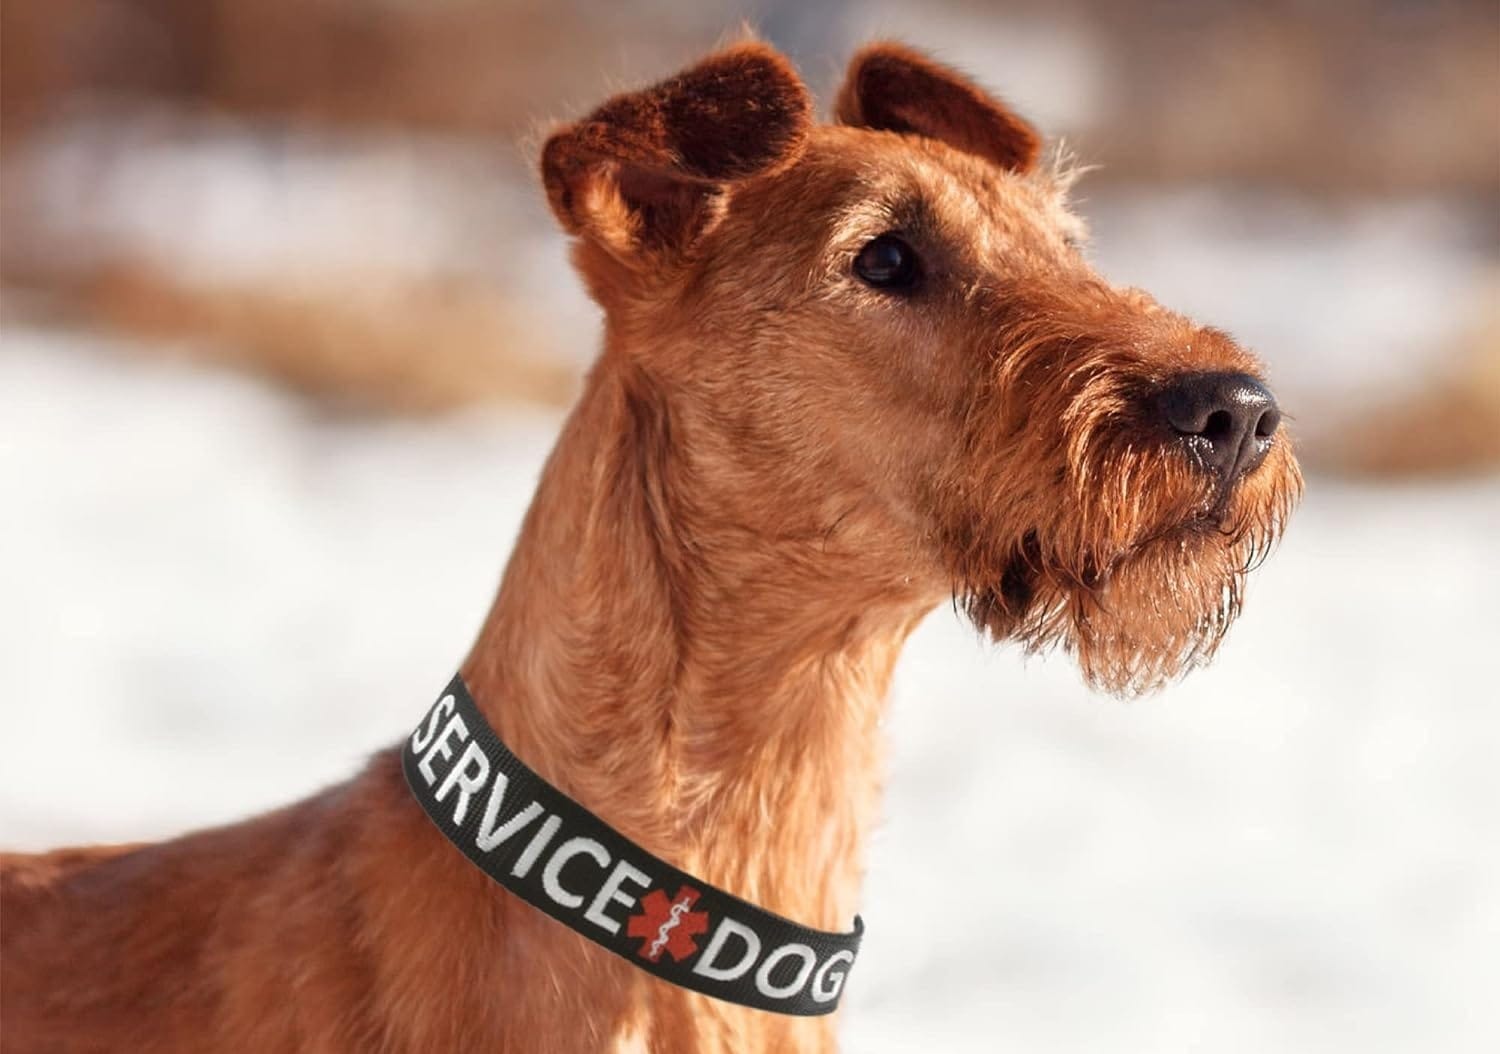 Service Dog Collar